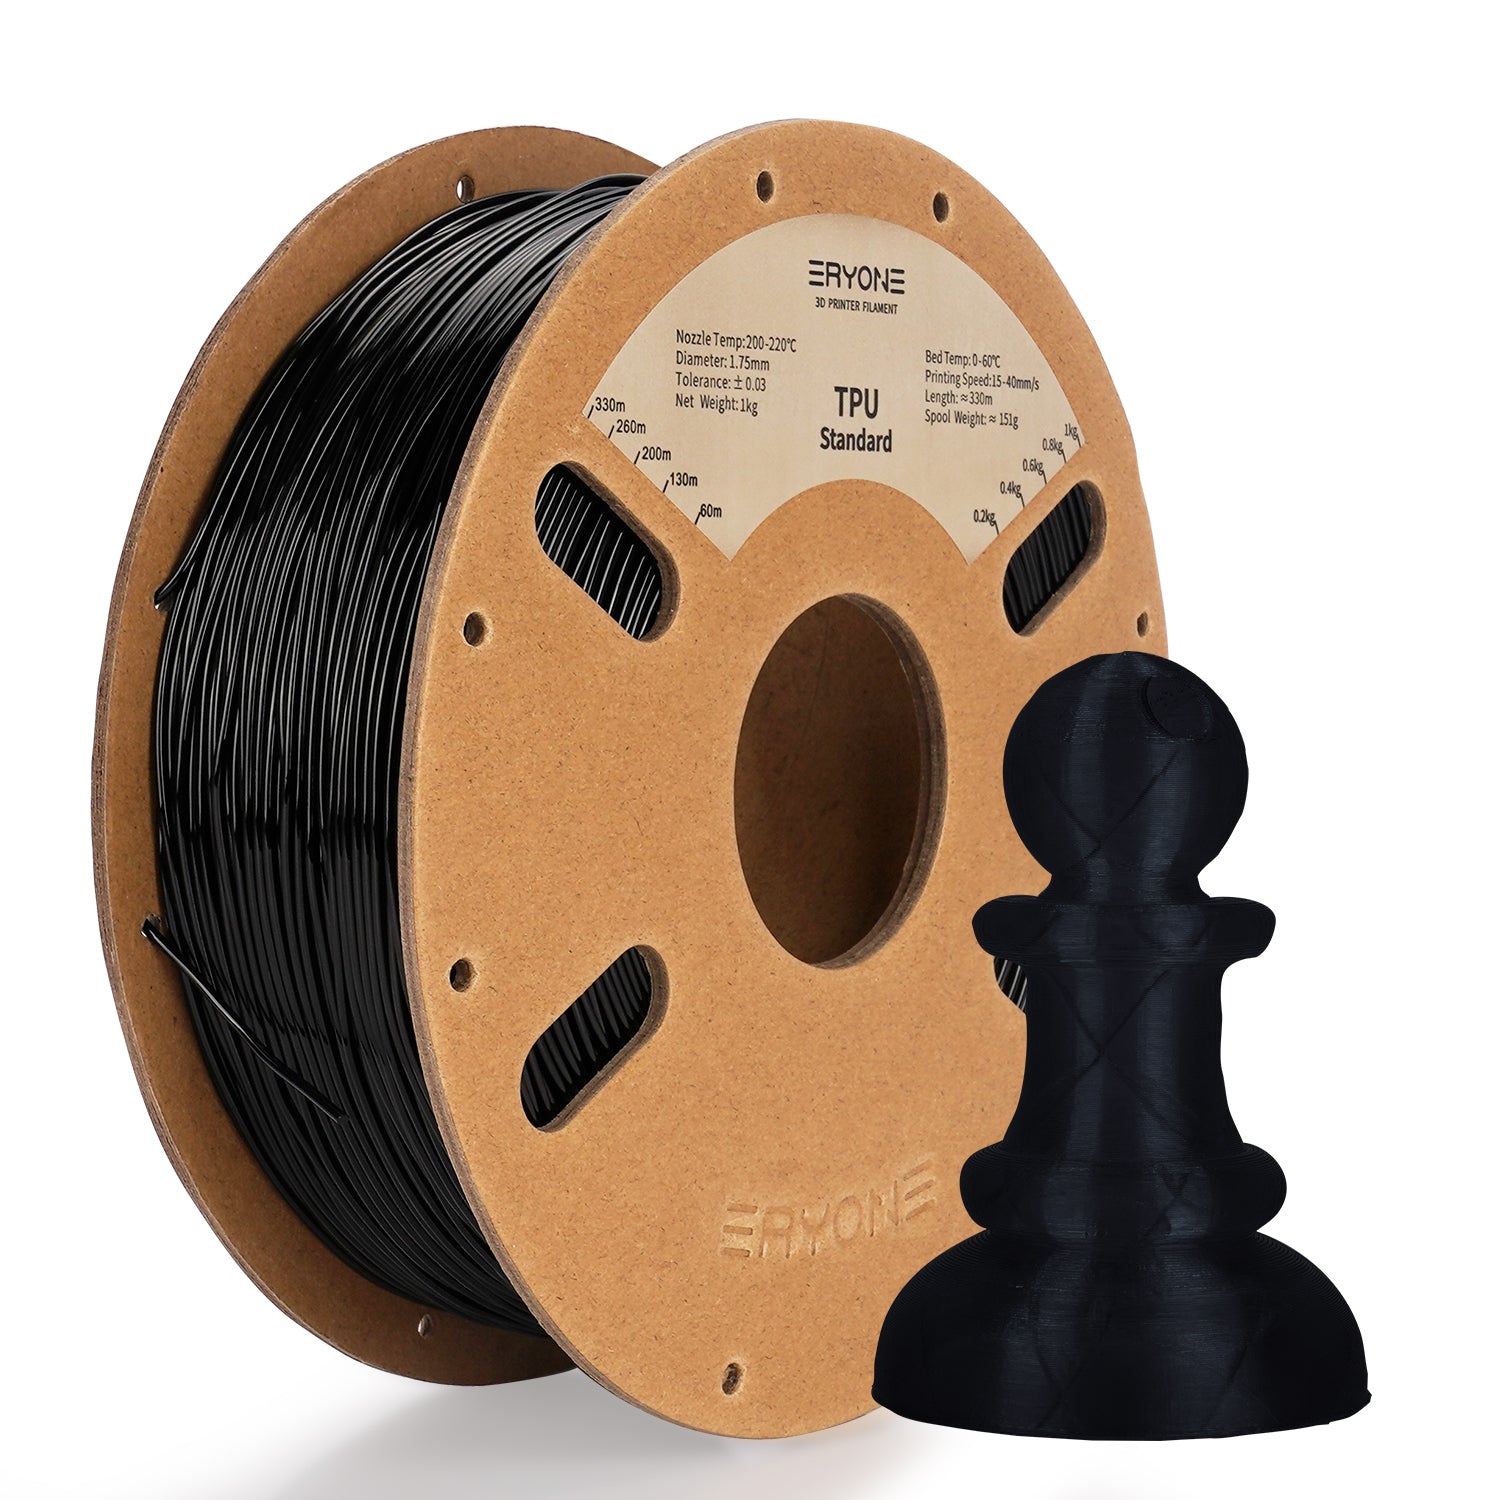 Filament pour imprimante 3D ERYONE 1.75mm TPU, précision dimensionnelle +/- 0.05 mm, 0.5kg&1kg  (1.1 LB) / Bobine